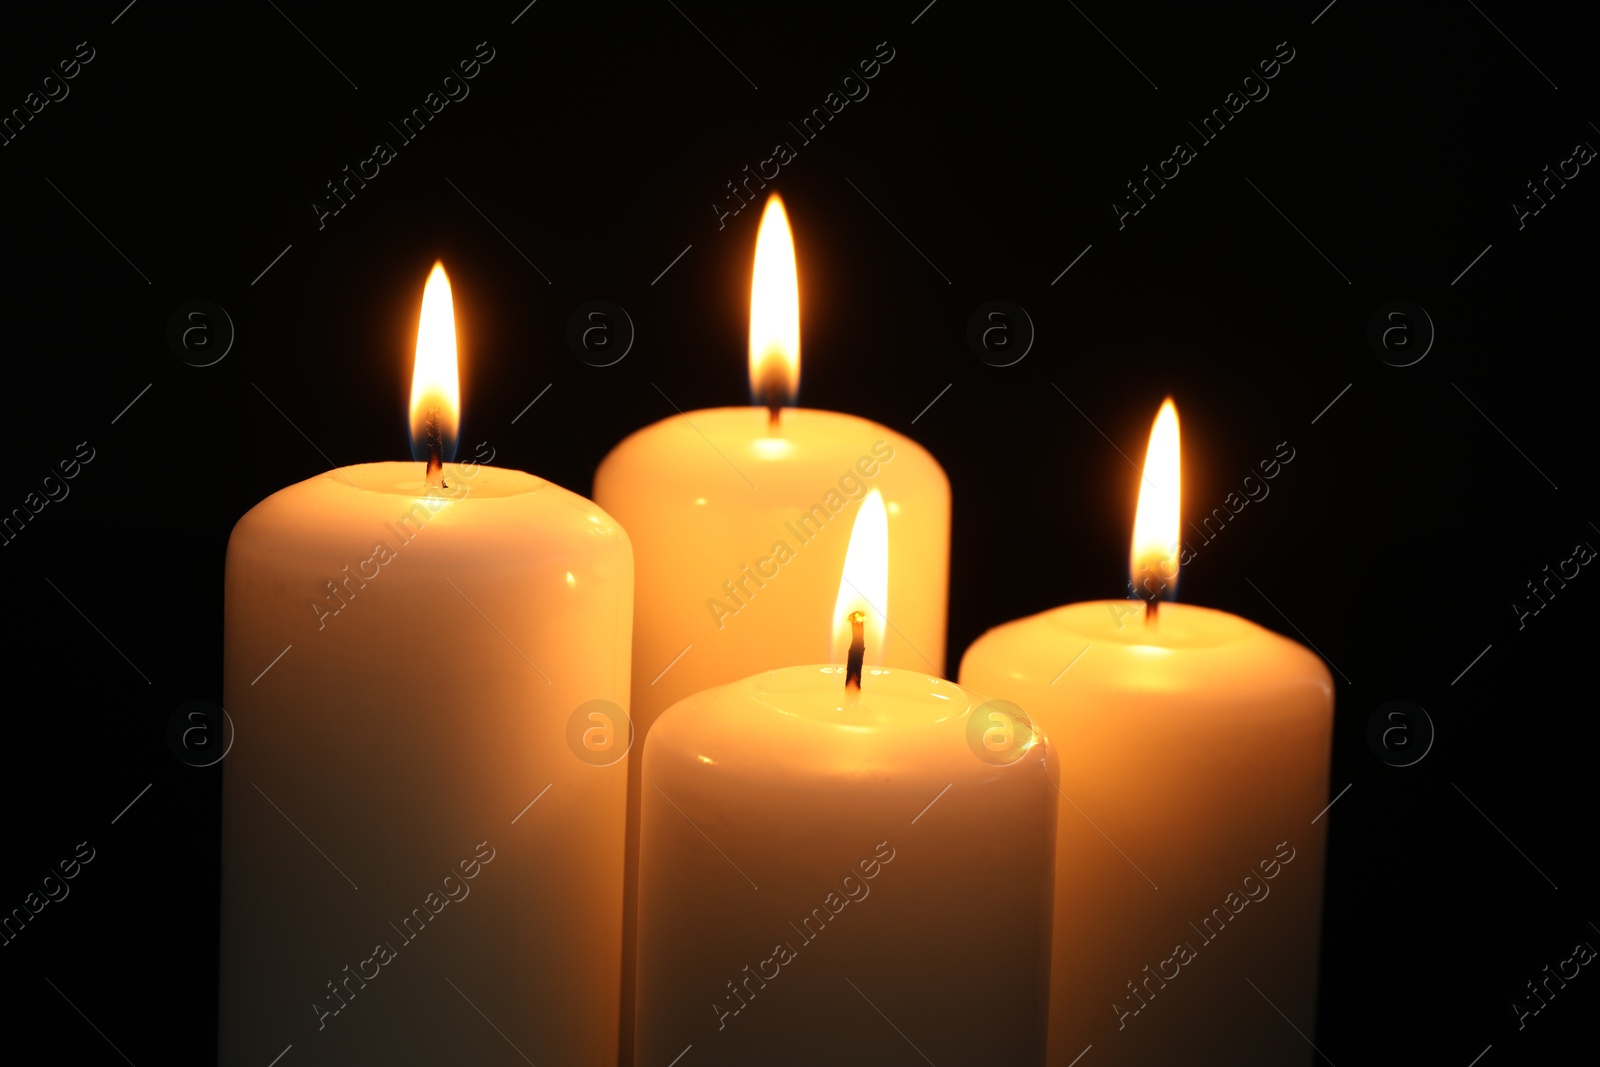 Photo of Many burning candles on black background, closeup